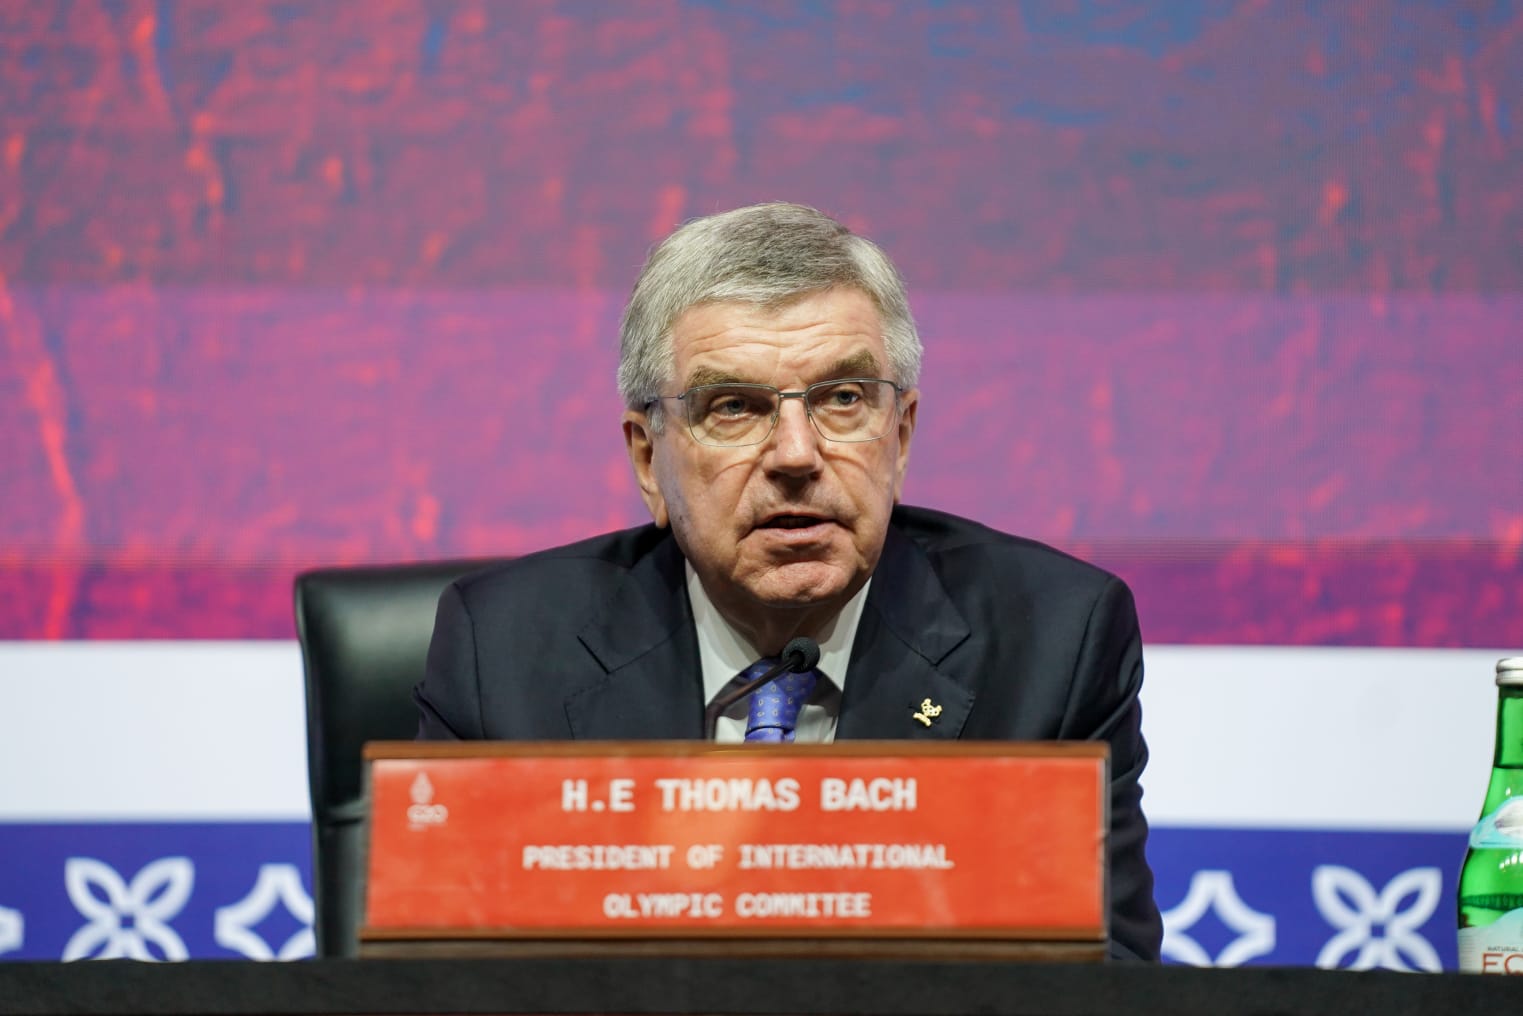 Presiden IOC Thomas Bach Sambut Baik Semangat Presiden Jokowi agar Indonesia Jadi Tuan Rumah Olimpiade 2036